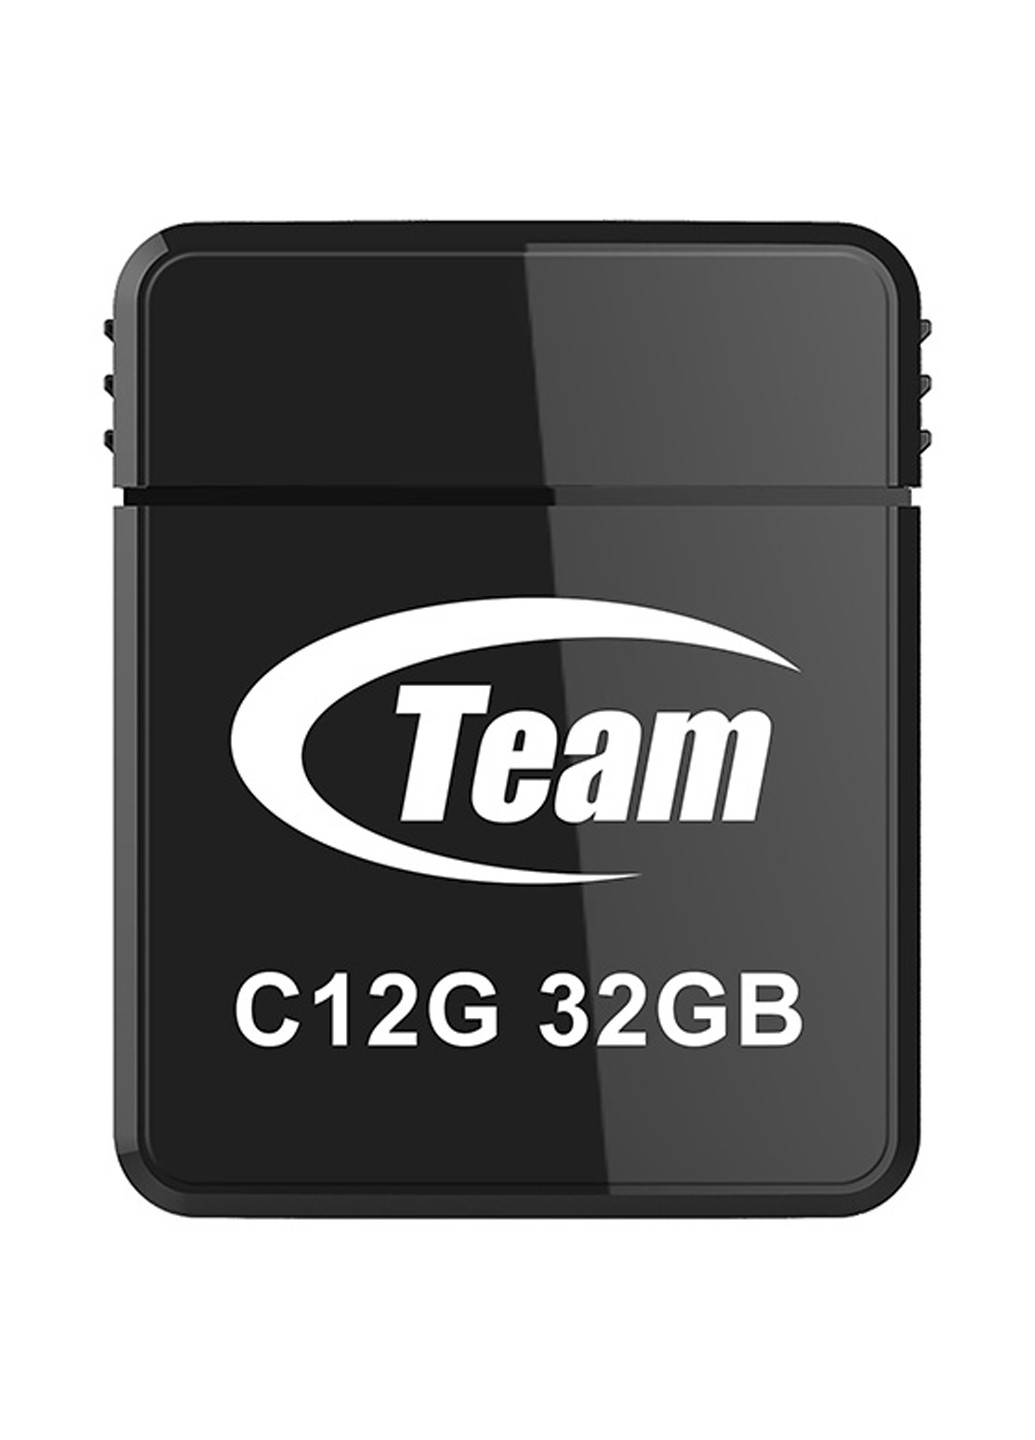 Флеш пам'ять USB C12G 32Gb Black (TC12G32GB01) Team флеш память usb team c12g 32gb black (tc12g32gb01) (134201769)